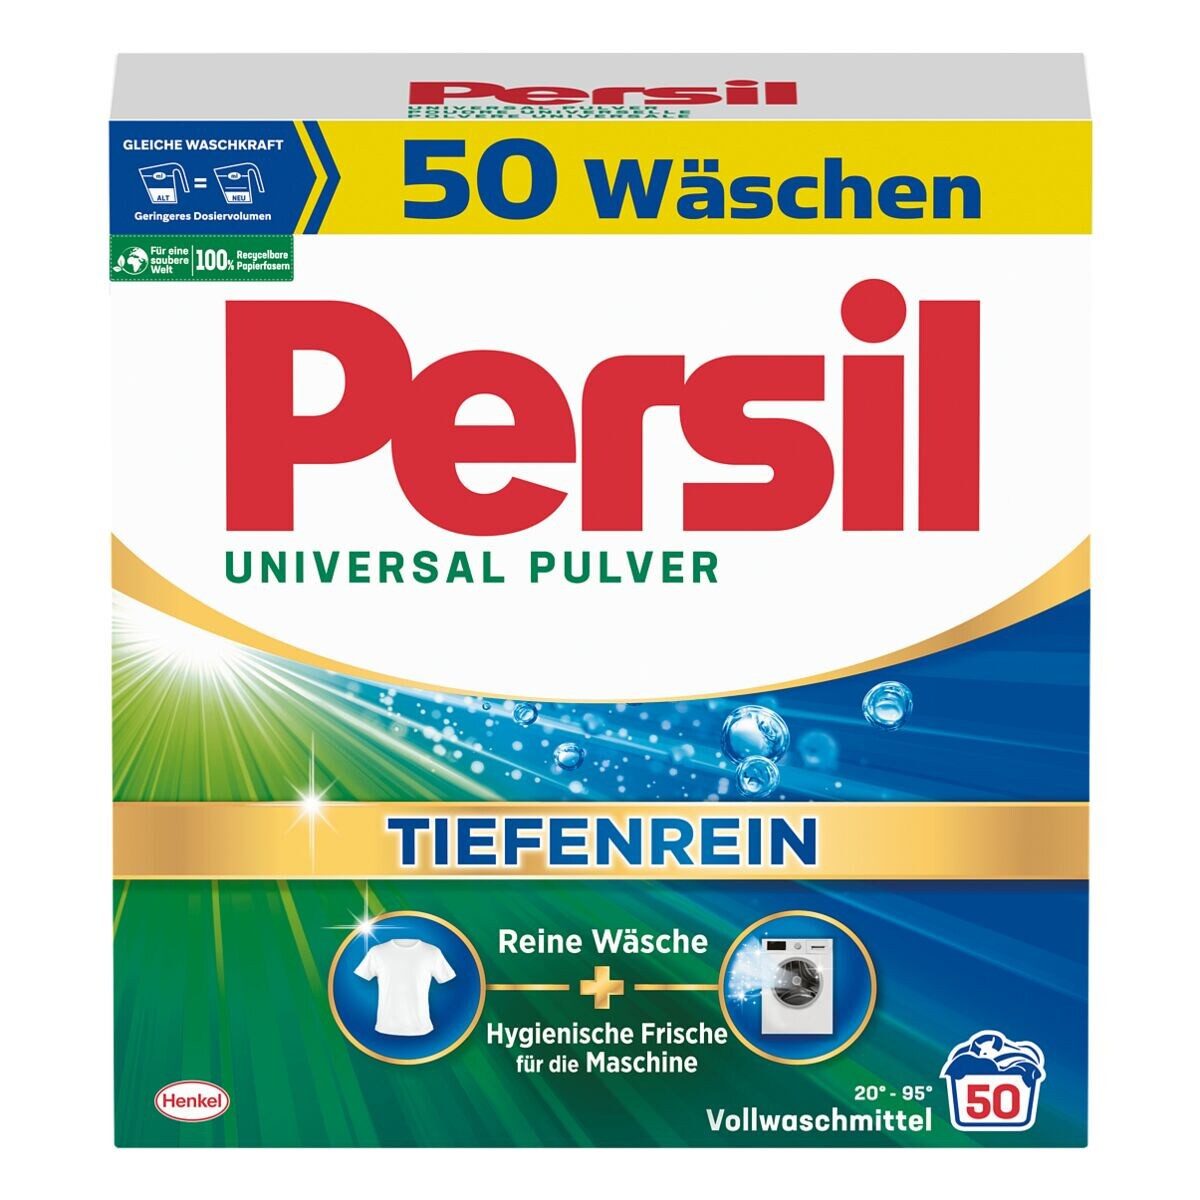 Persil Universal Pulver - Tiefenrein Vollwaschmittel (50 WL, 3,25 kg)